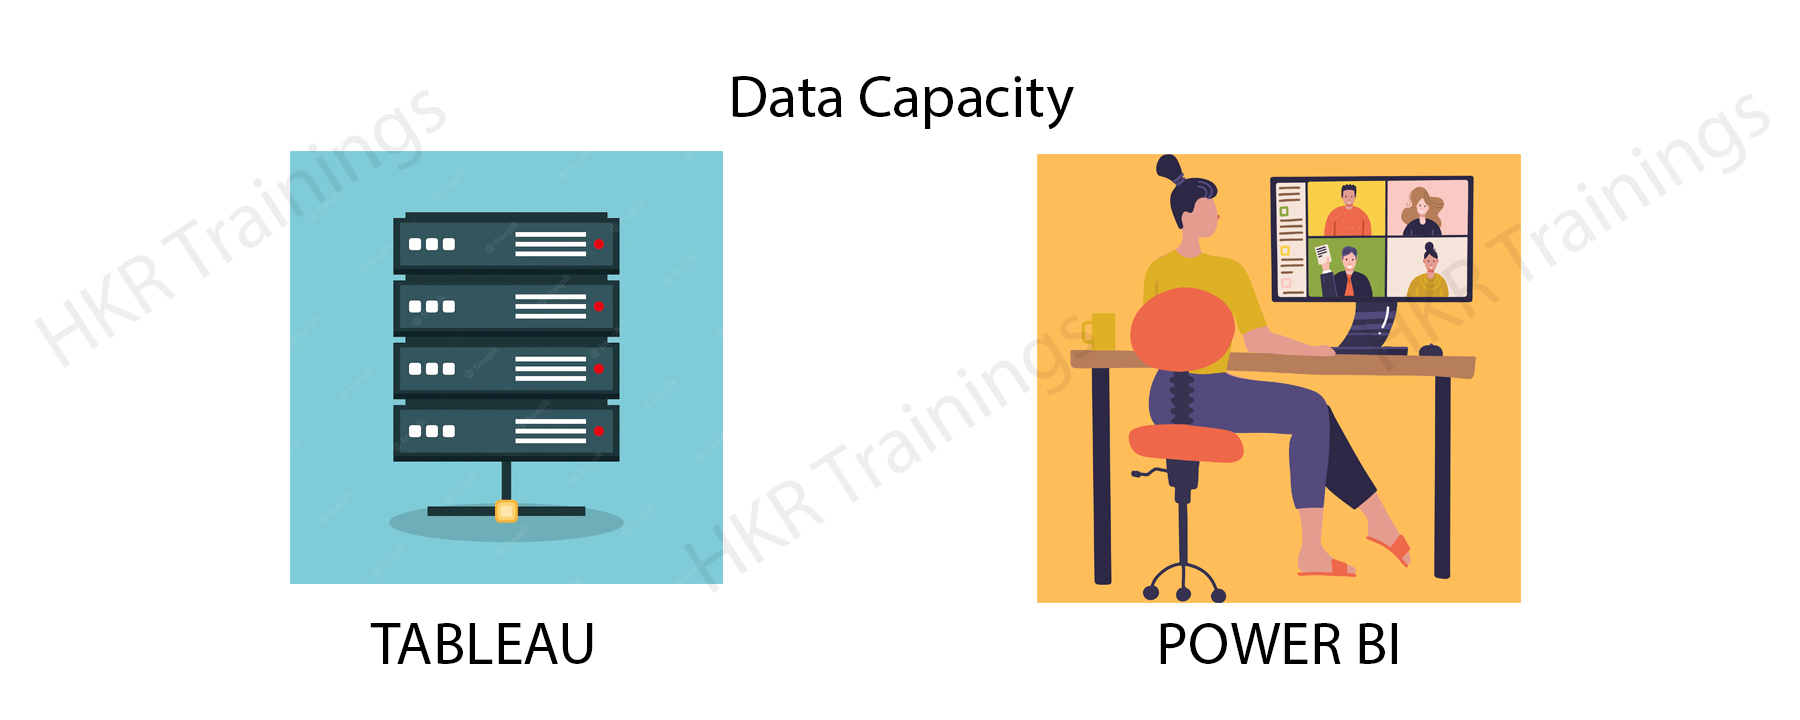 Data Capacity